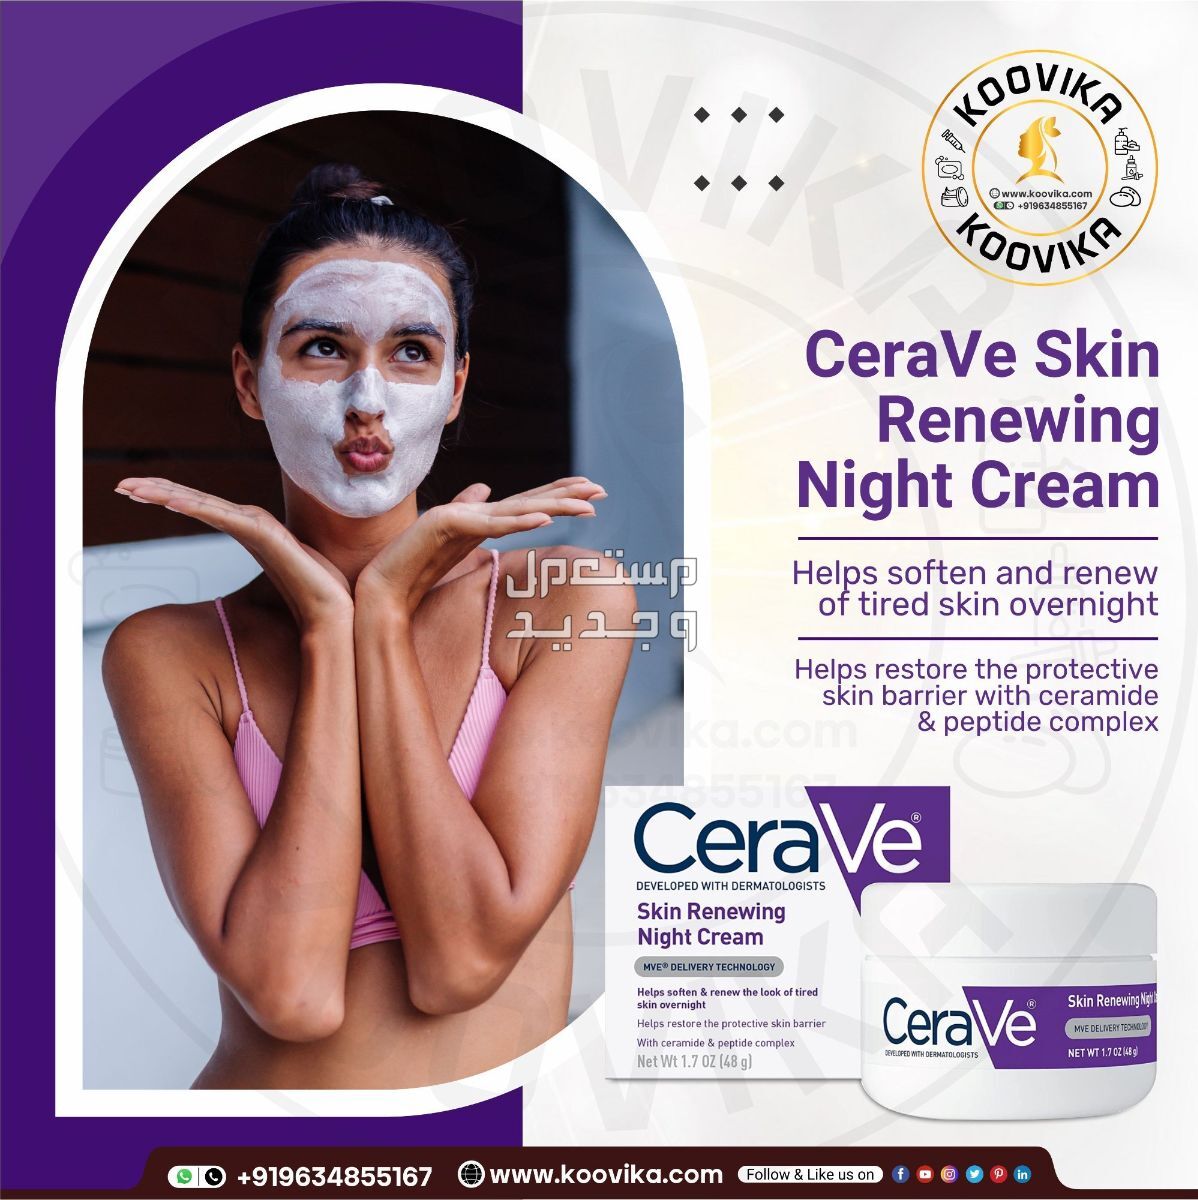 أفضل كريم ليلي للعناية بالبشرة لعام 2023 في عمان شكل كريم ليلي من CeraVe Skin Renewing Night Cream على البشرة